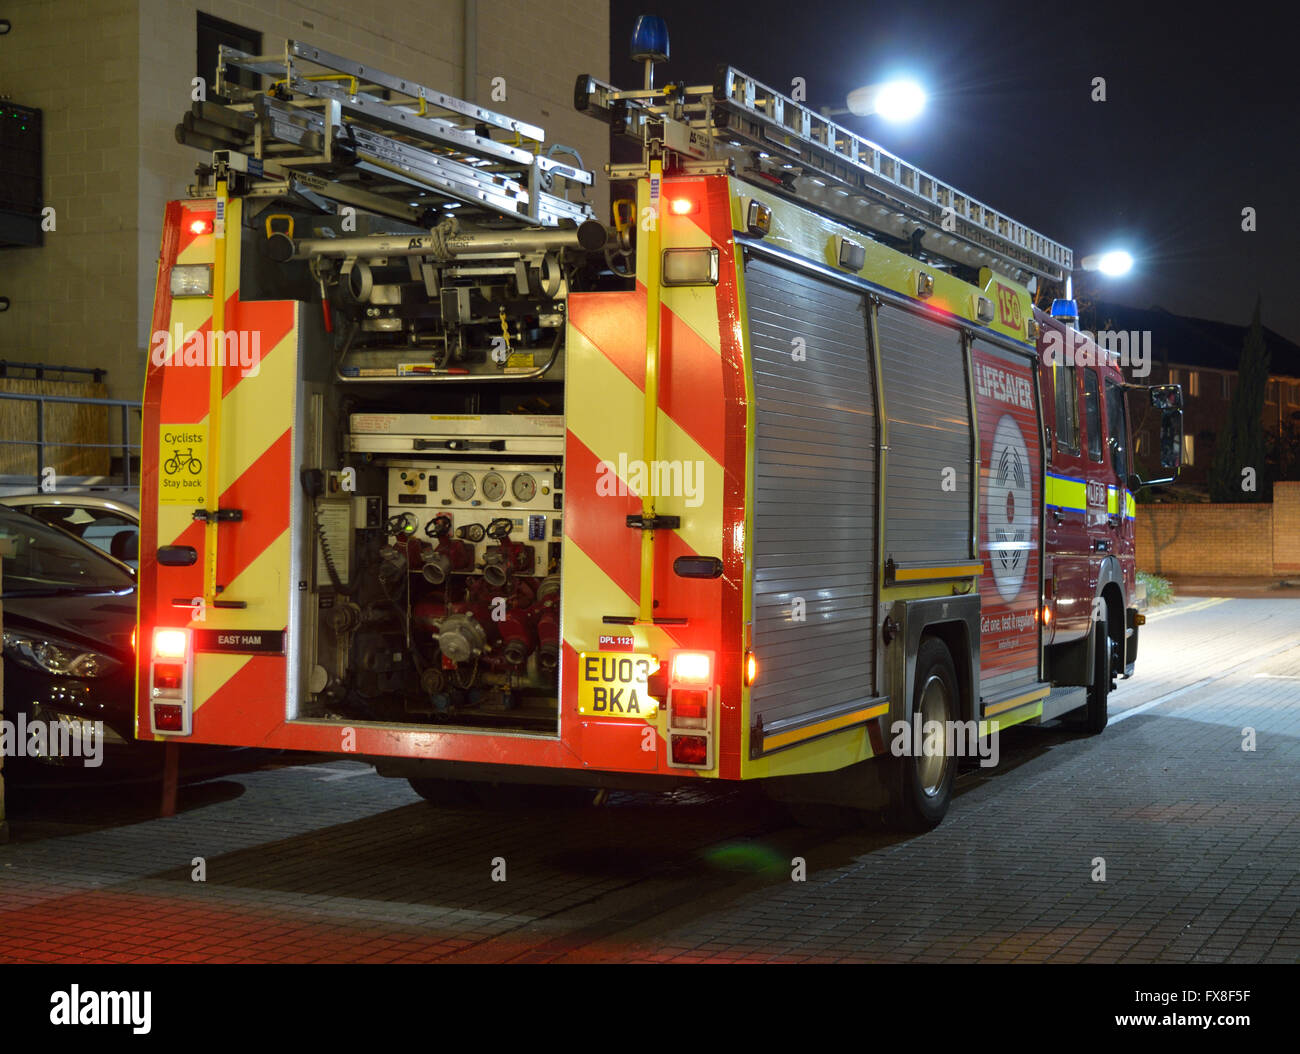 Feuerlöschfahrzeuge aus London Feuerwehr besuchen ein flaches Feuer in North Woolwich, London Stockfoto